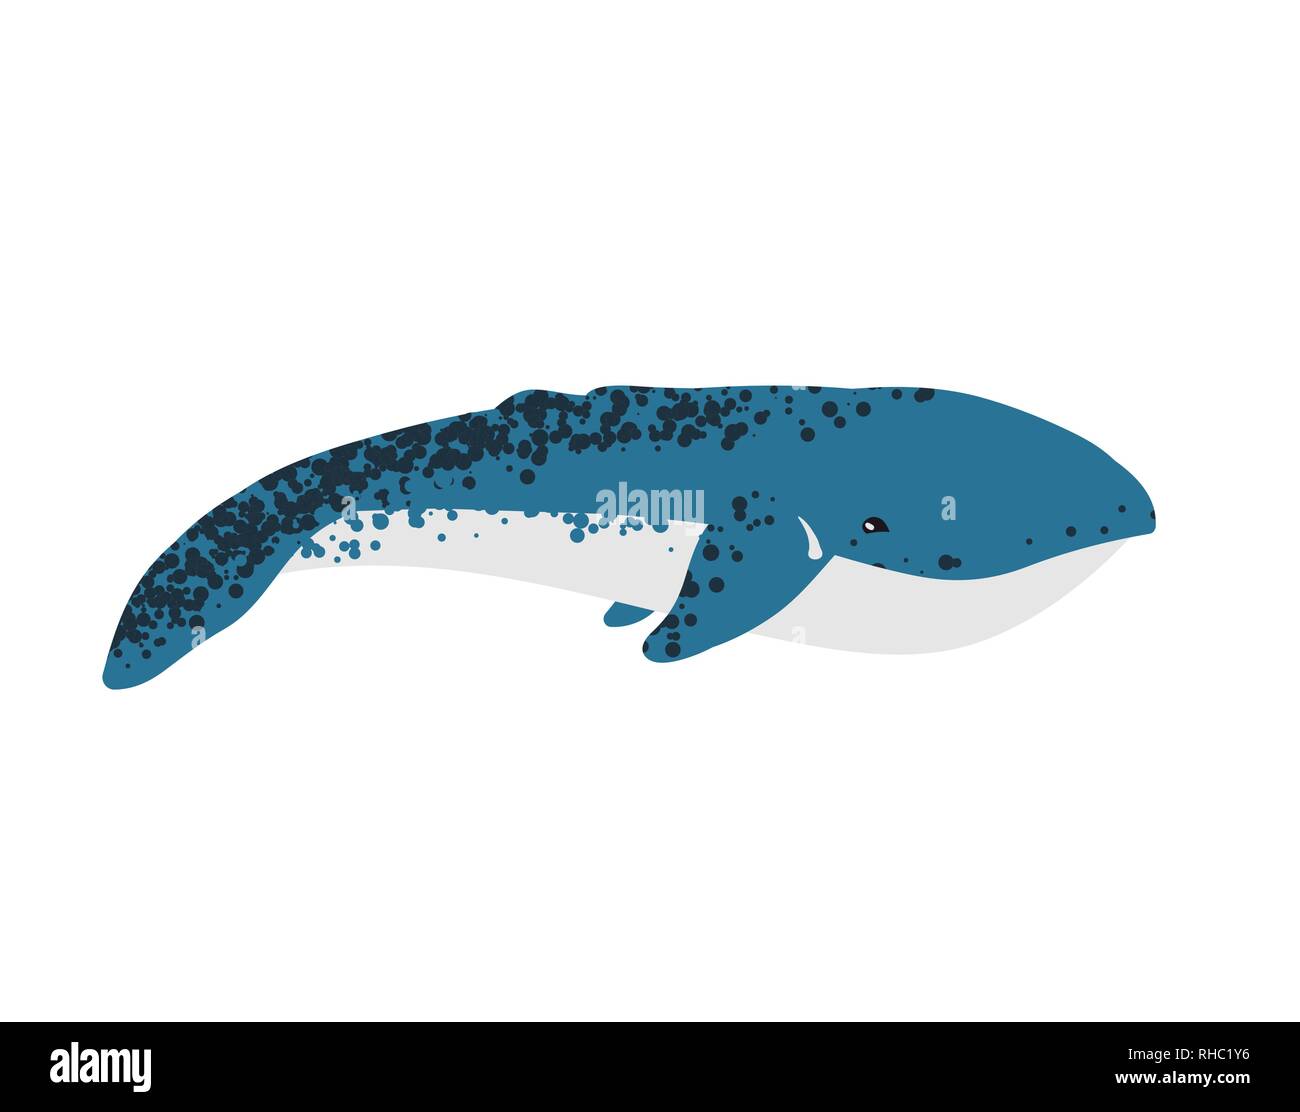 Illustrazione Vettoriale di balena. Illustrazione Vettoriale di balena. Illustrazione Vettoriale